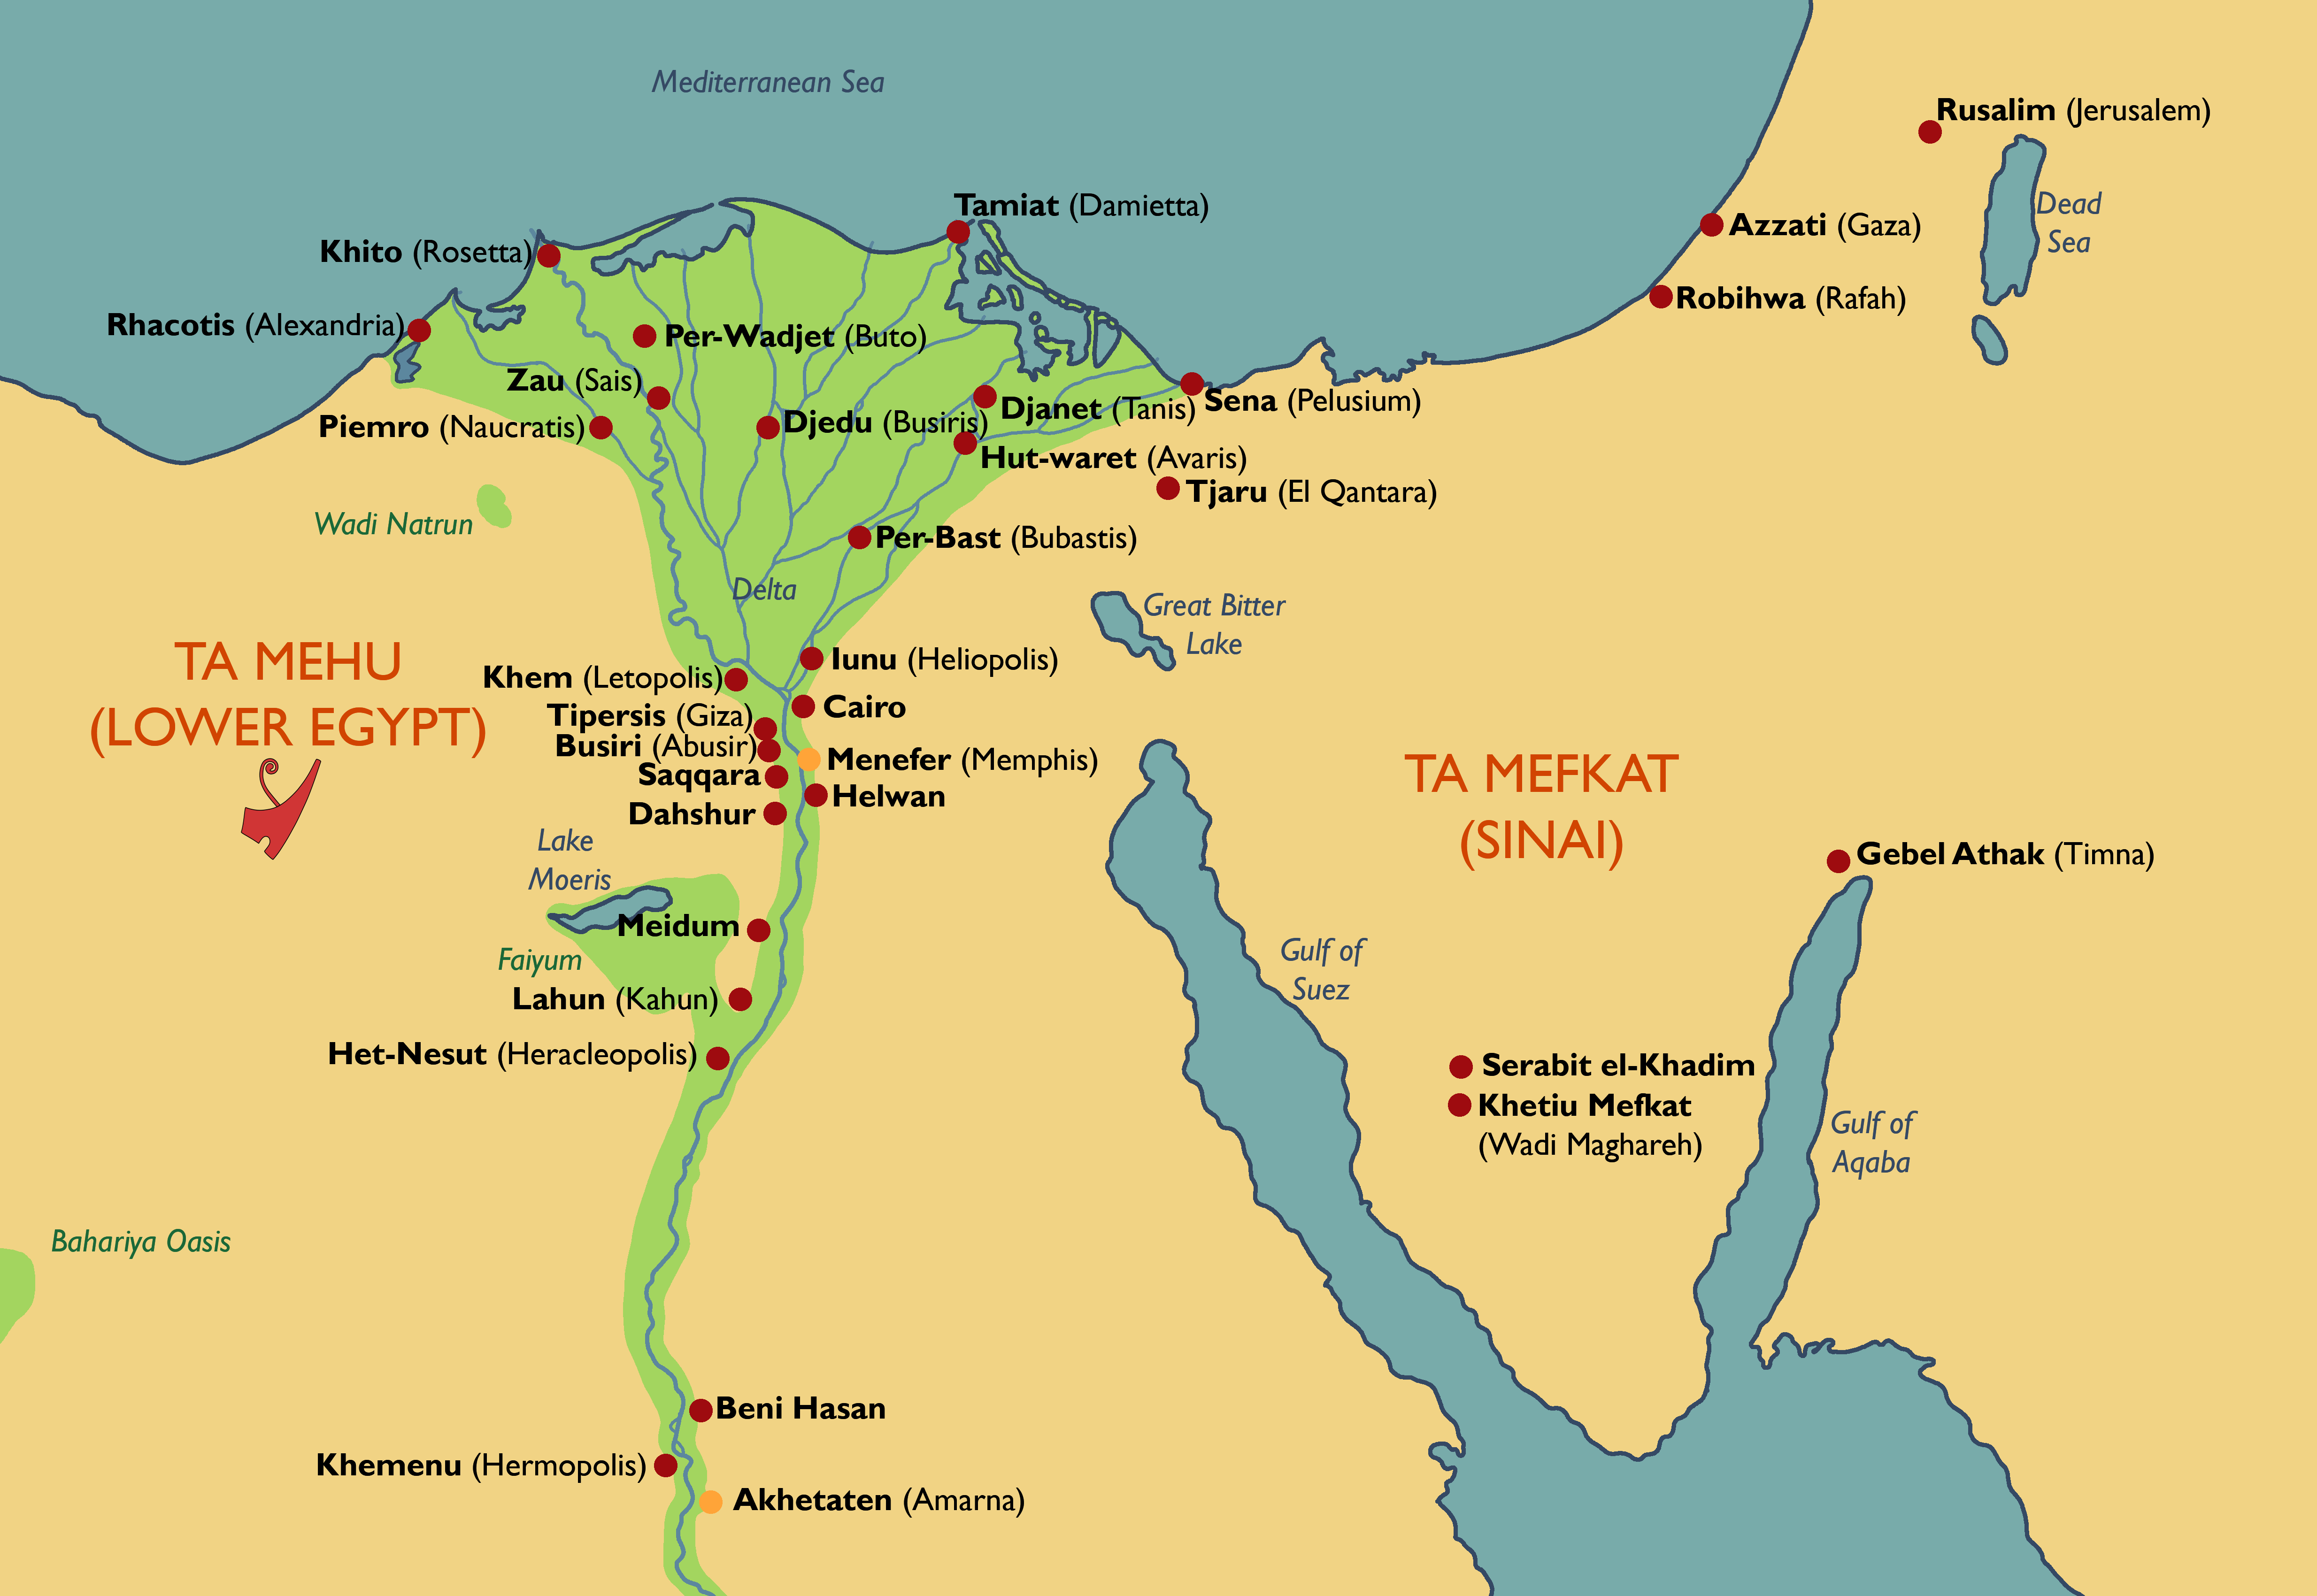 древний египет карта фото